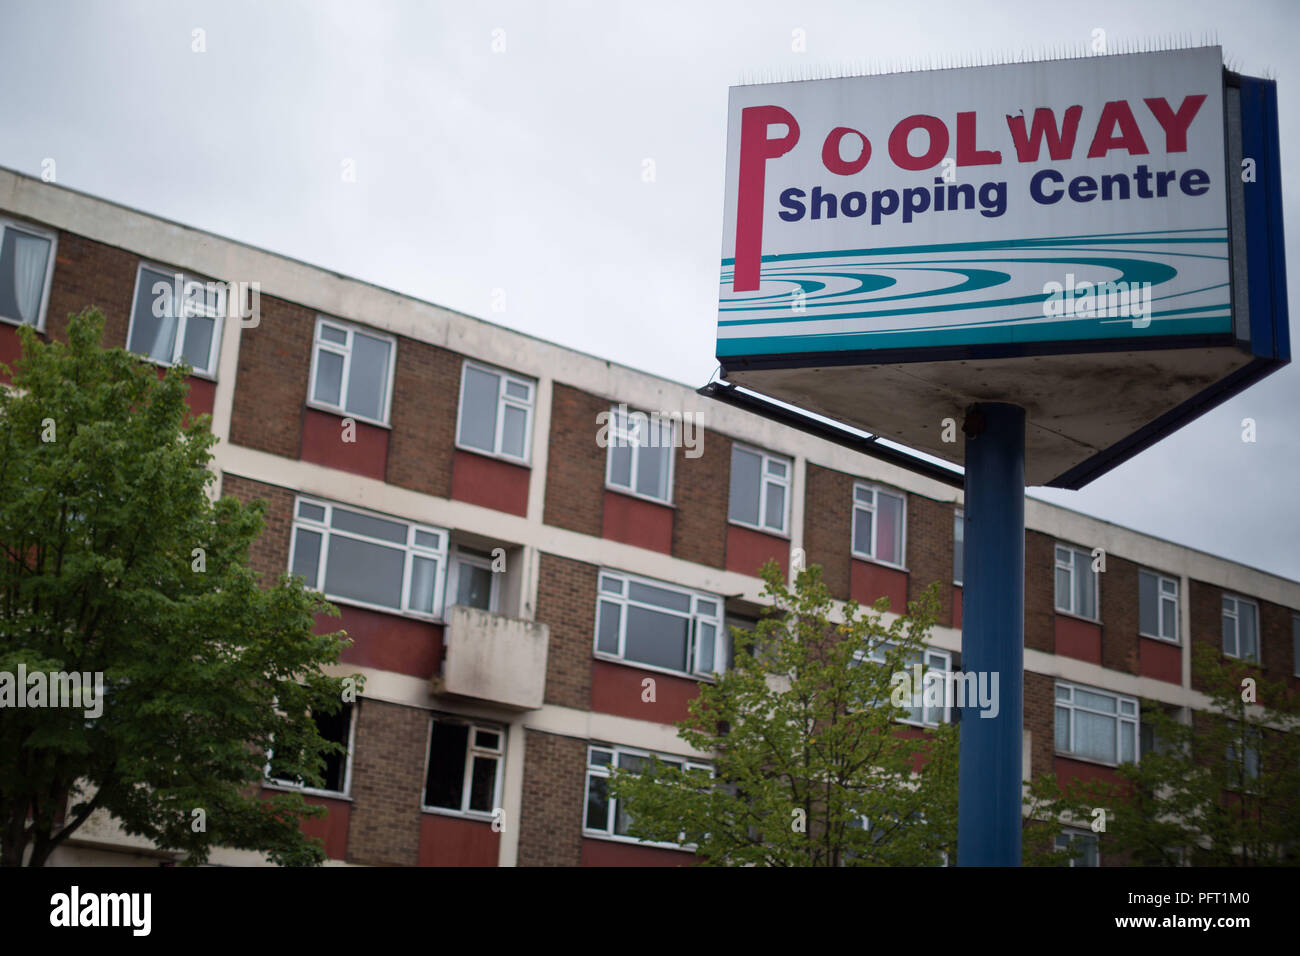 Un panneau à l'Poolway abandonnés dans le centre commercial Garretts Green, Birmingham. Construit en 1961, il fut une prospère centre de vente au détail avec les collectivités locales et grands magasins de marque, mais est devenue une ville fantôme, quelques mois après la clôture. Banque D'Images